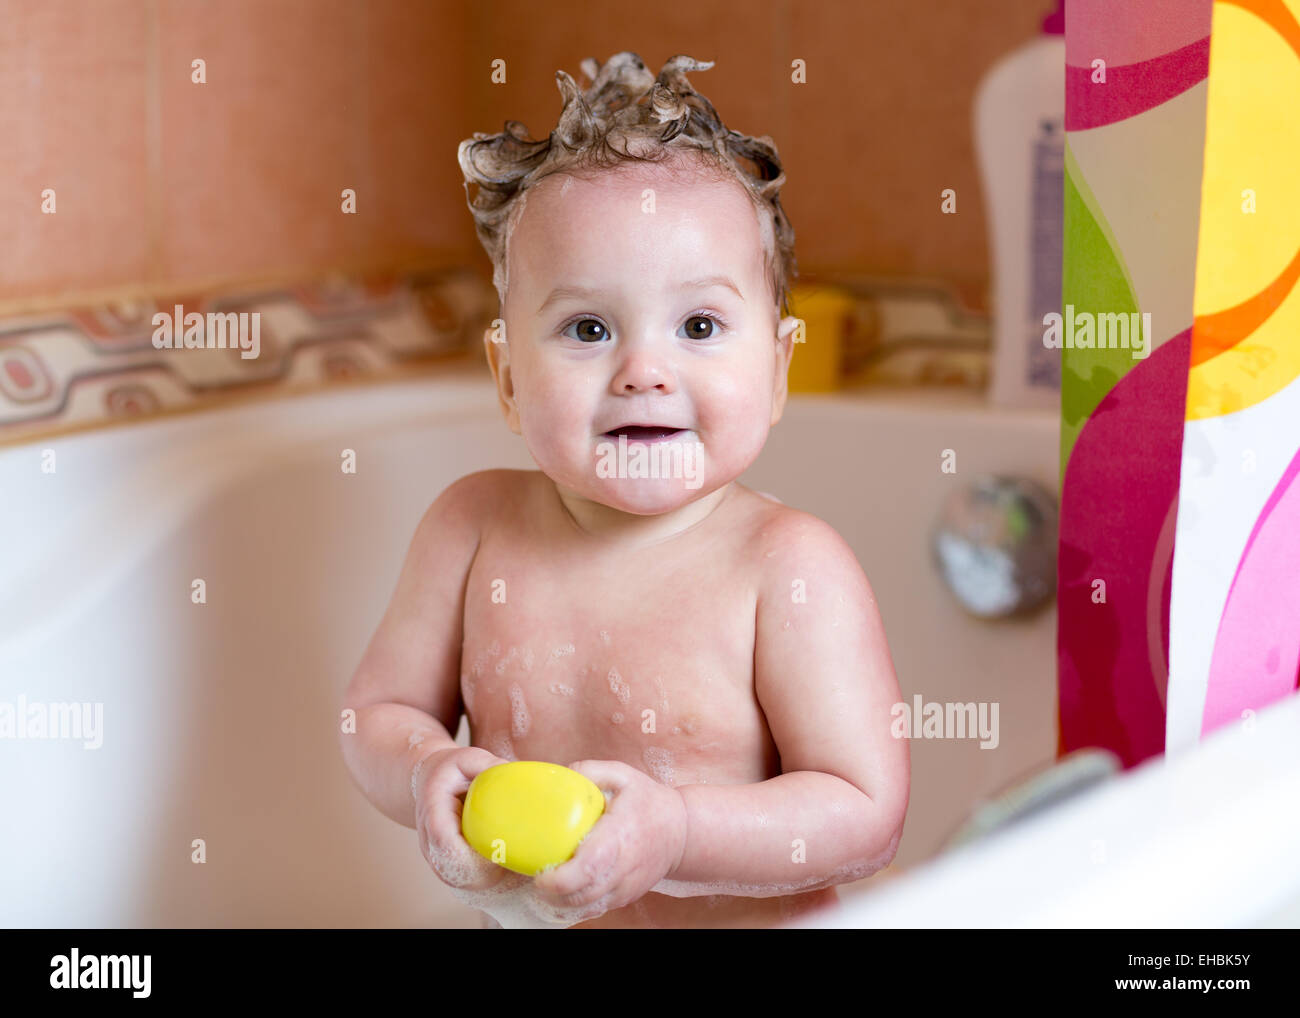 lustige Baby Lächeln beim Baden Stockfotografie - Alamy